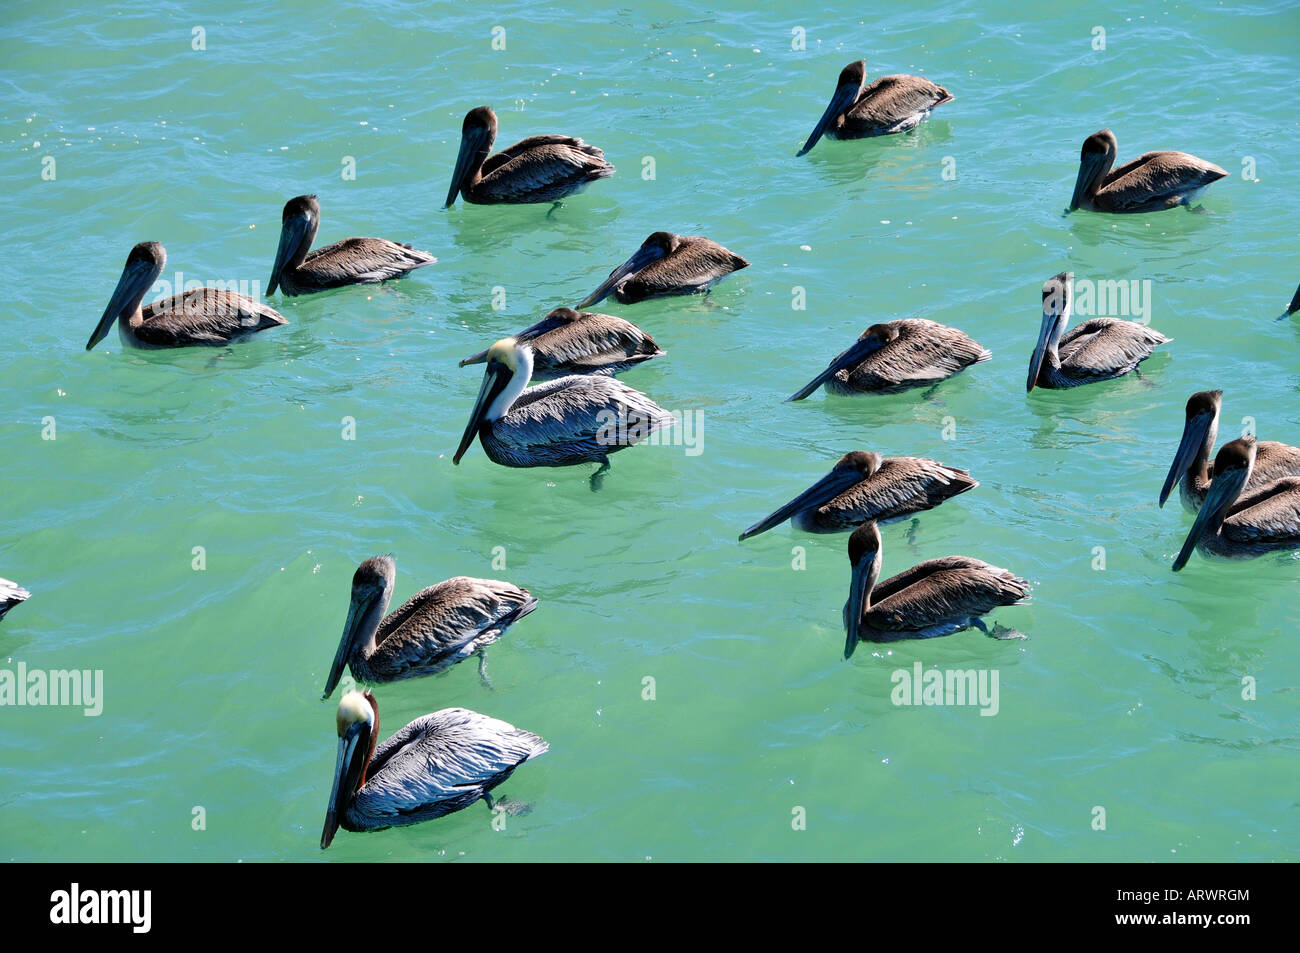 Un grand groupe de pélicans flottant sur l'eau Banque D'Images